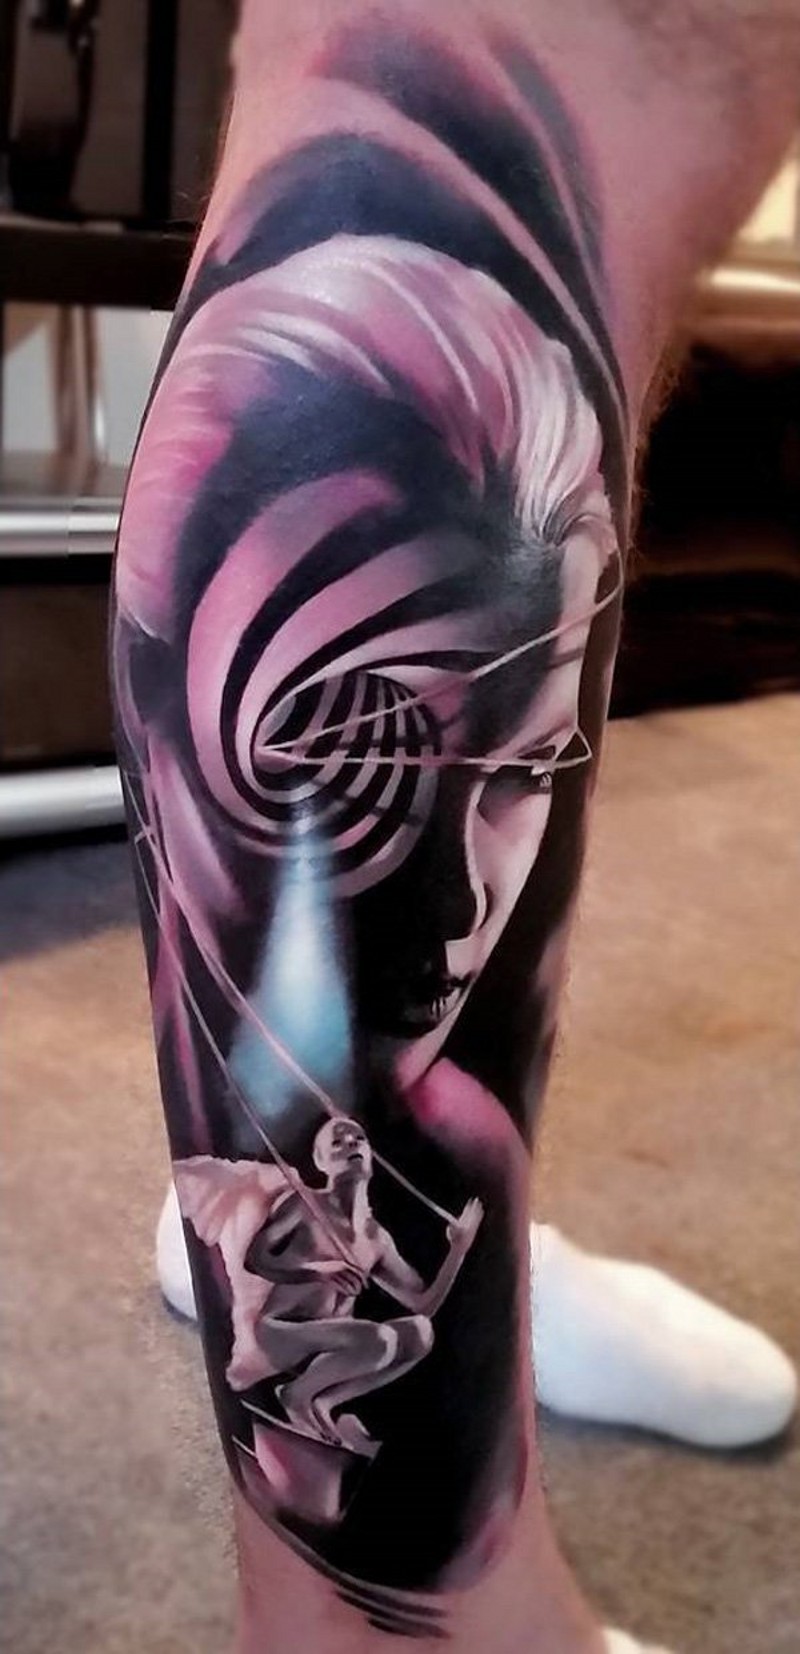 Tatuaje en la pierna,
mujer surrealista con ornamento hipnótico